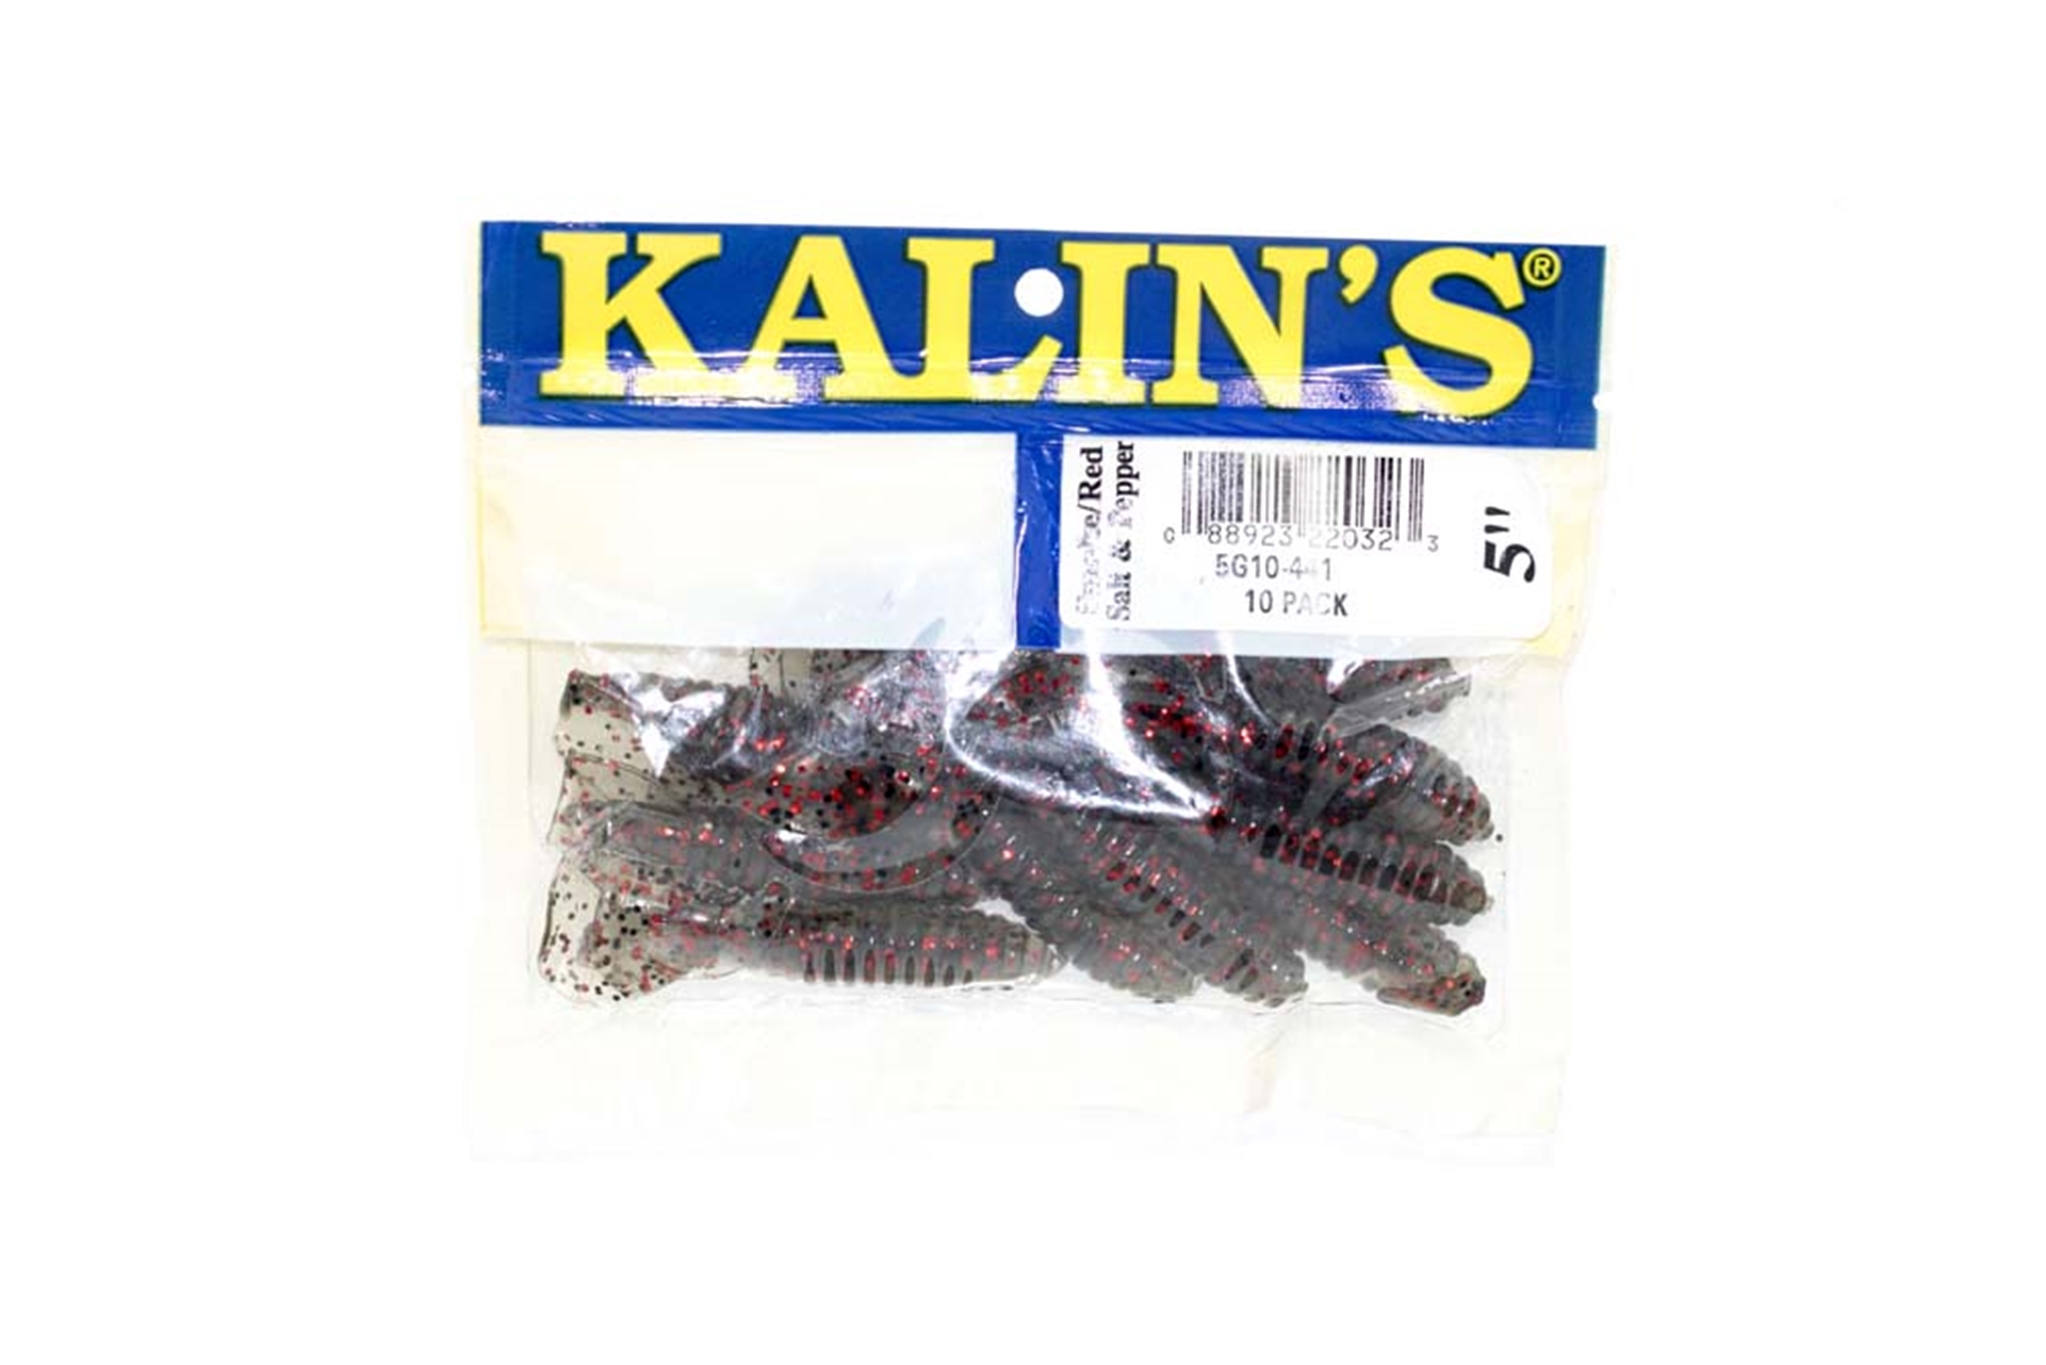 Kalin's 3 Lunker Grubs